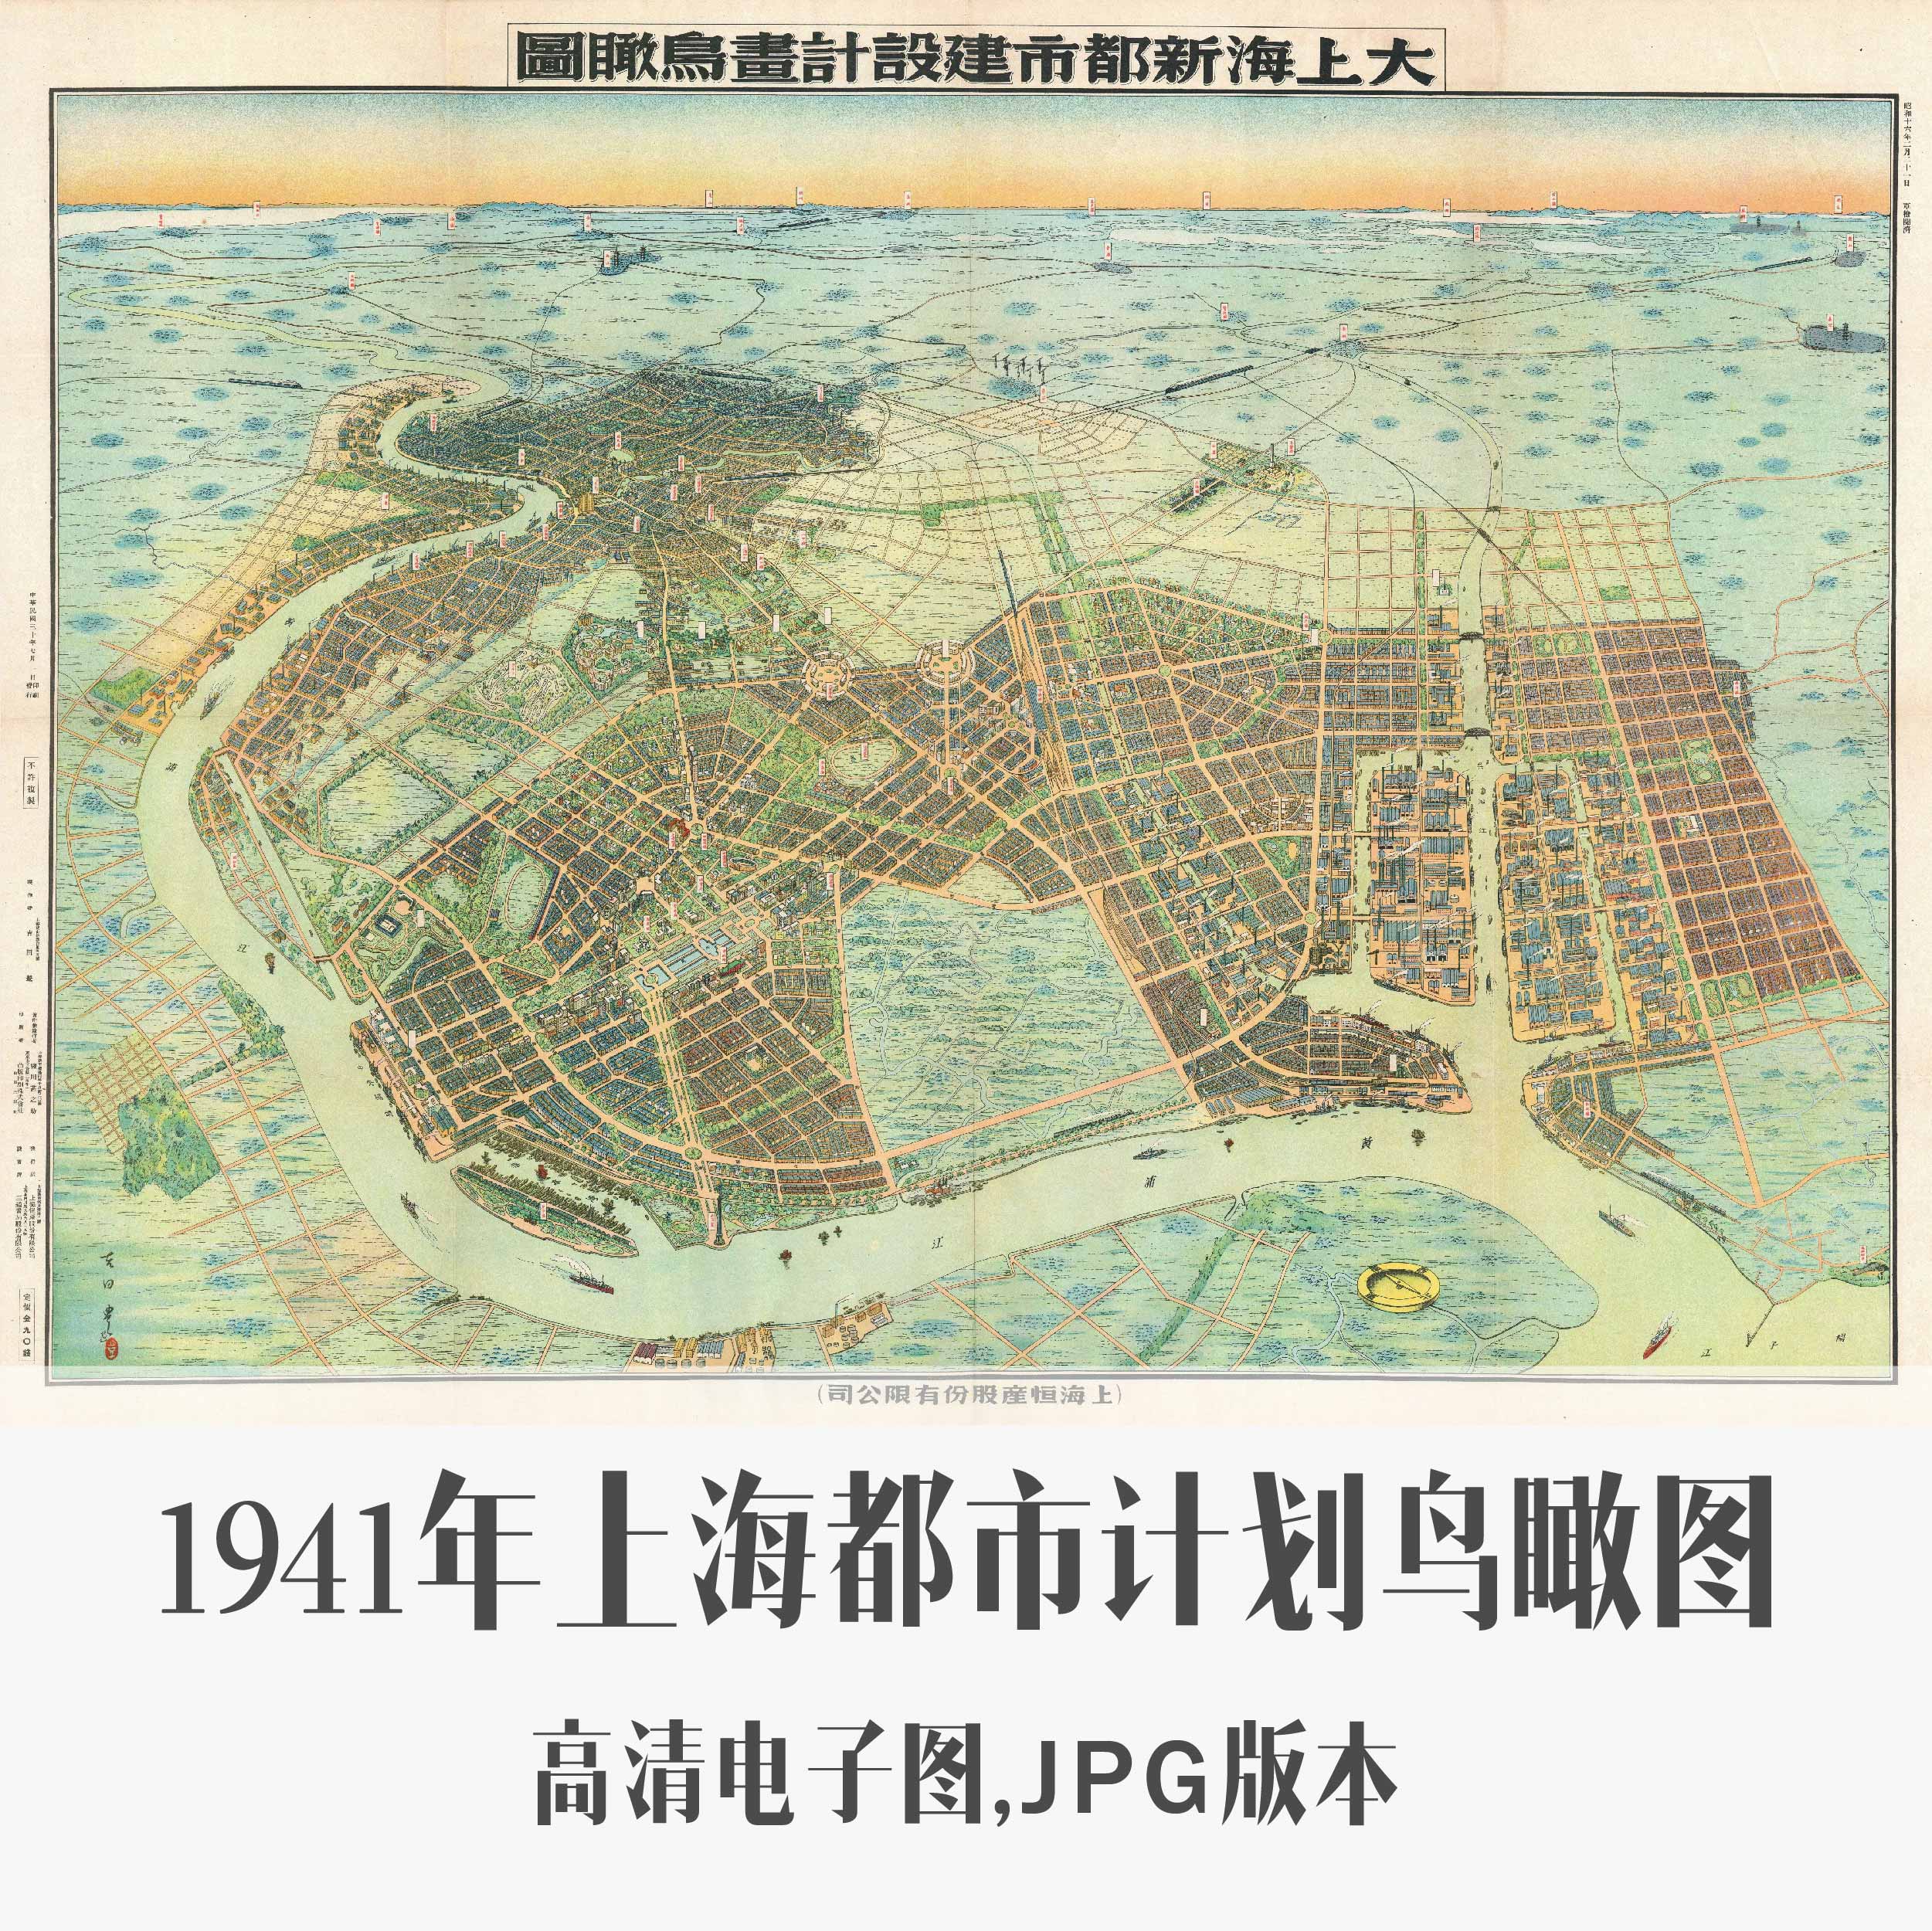 1941年上海都市计划鸟瞰图电子老地图手绘历史地理资料素材